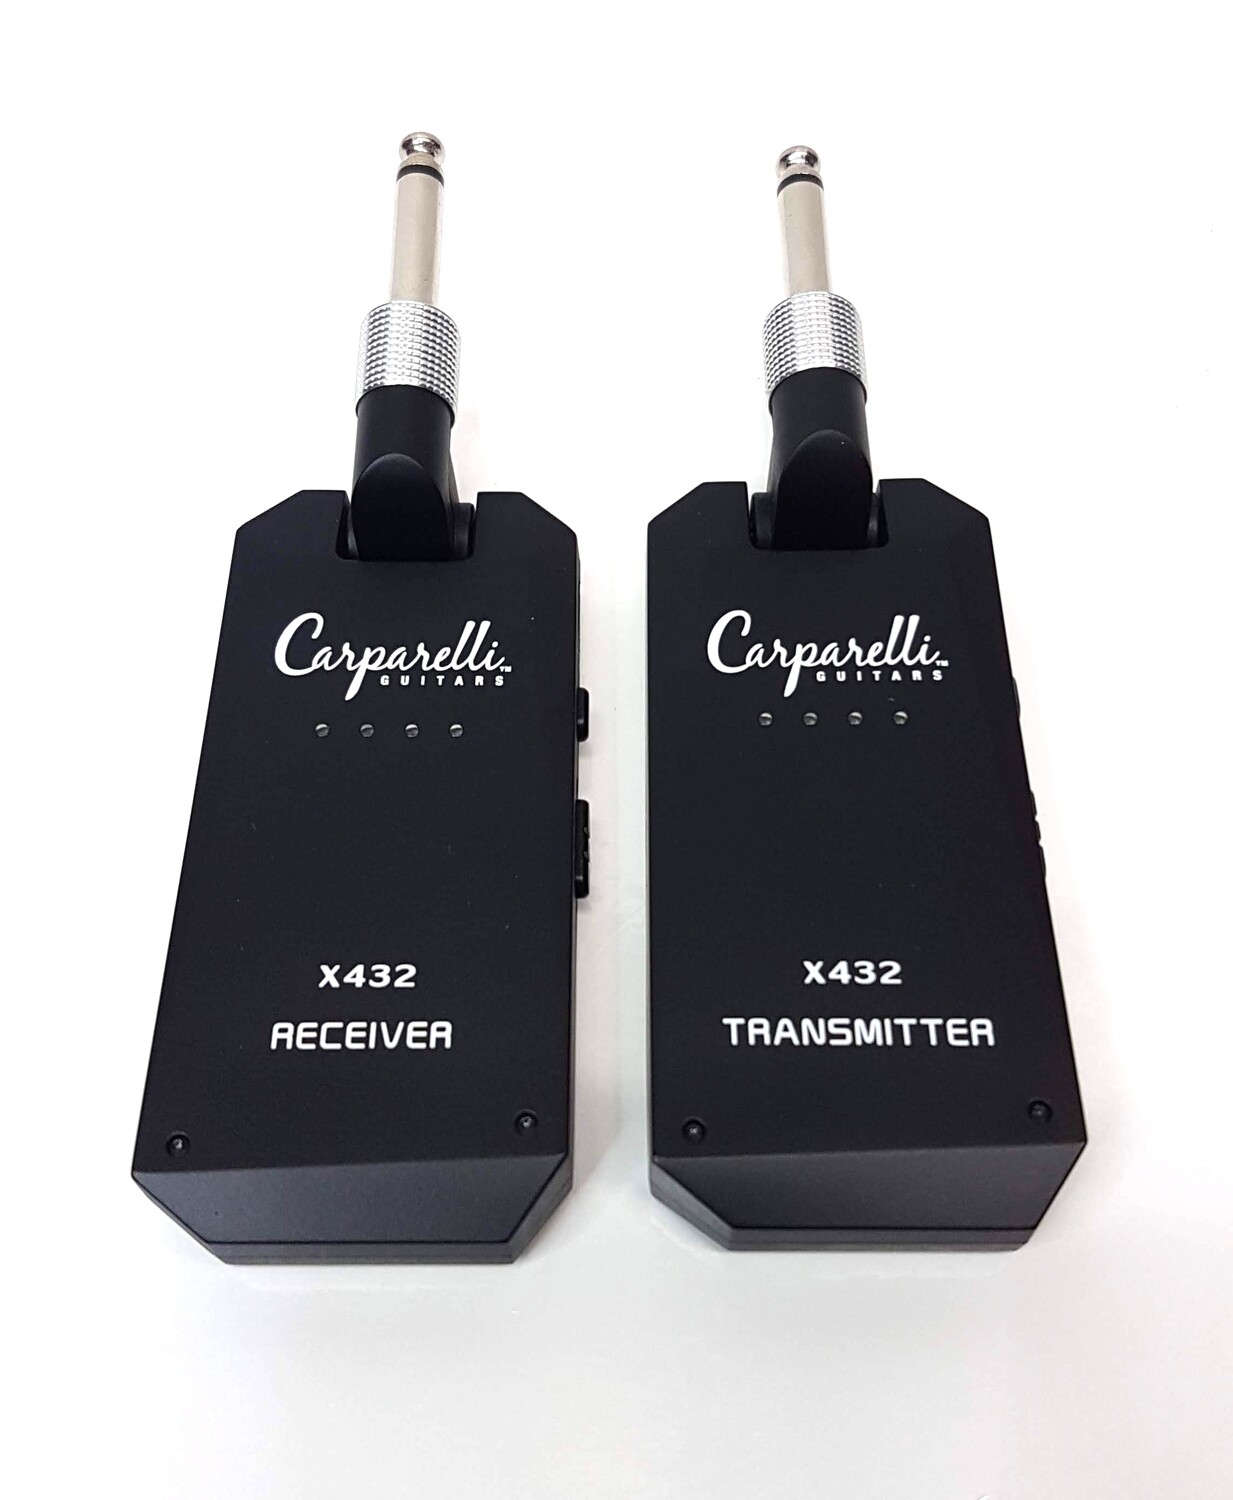 Carparelli X432 5.8Ghz Wireless System